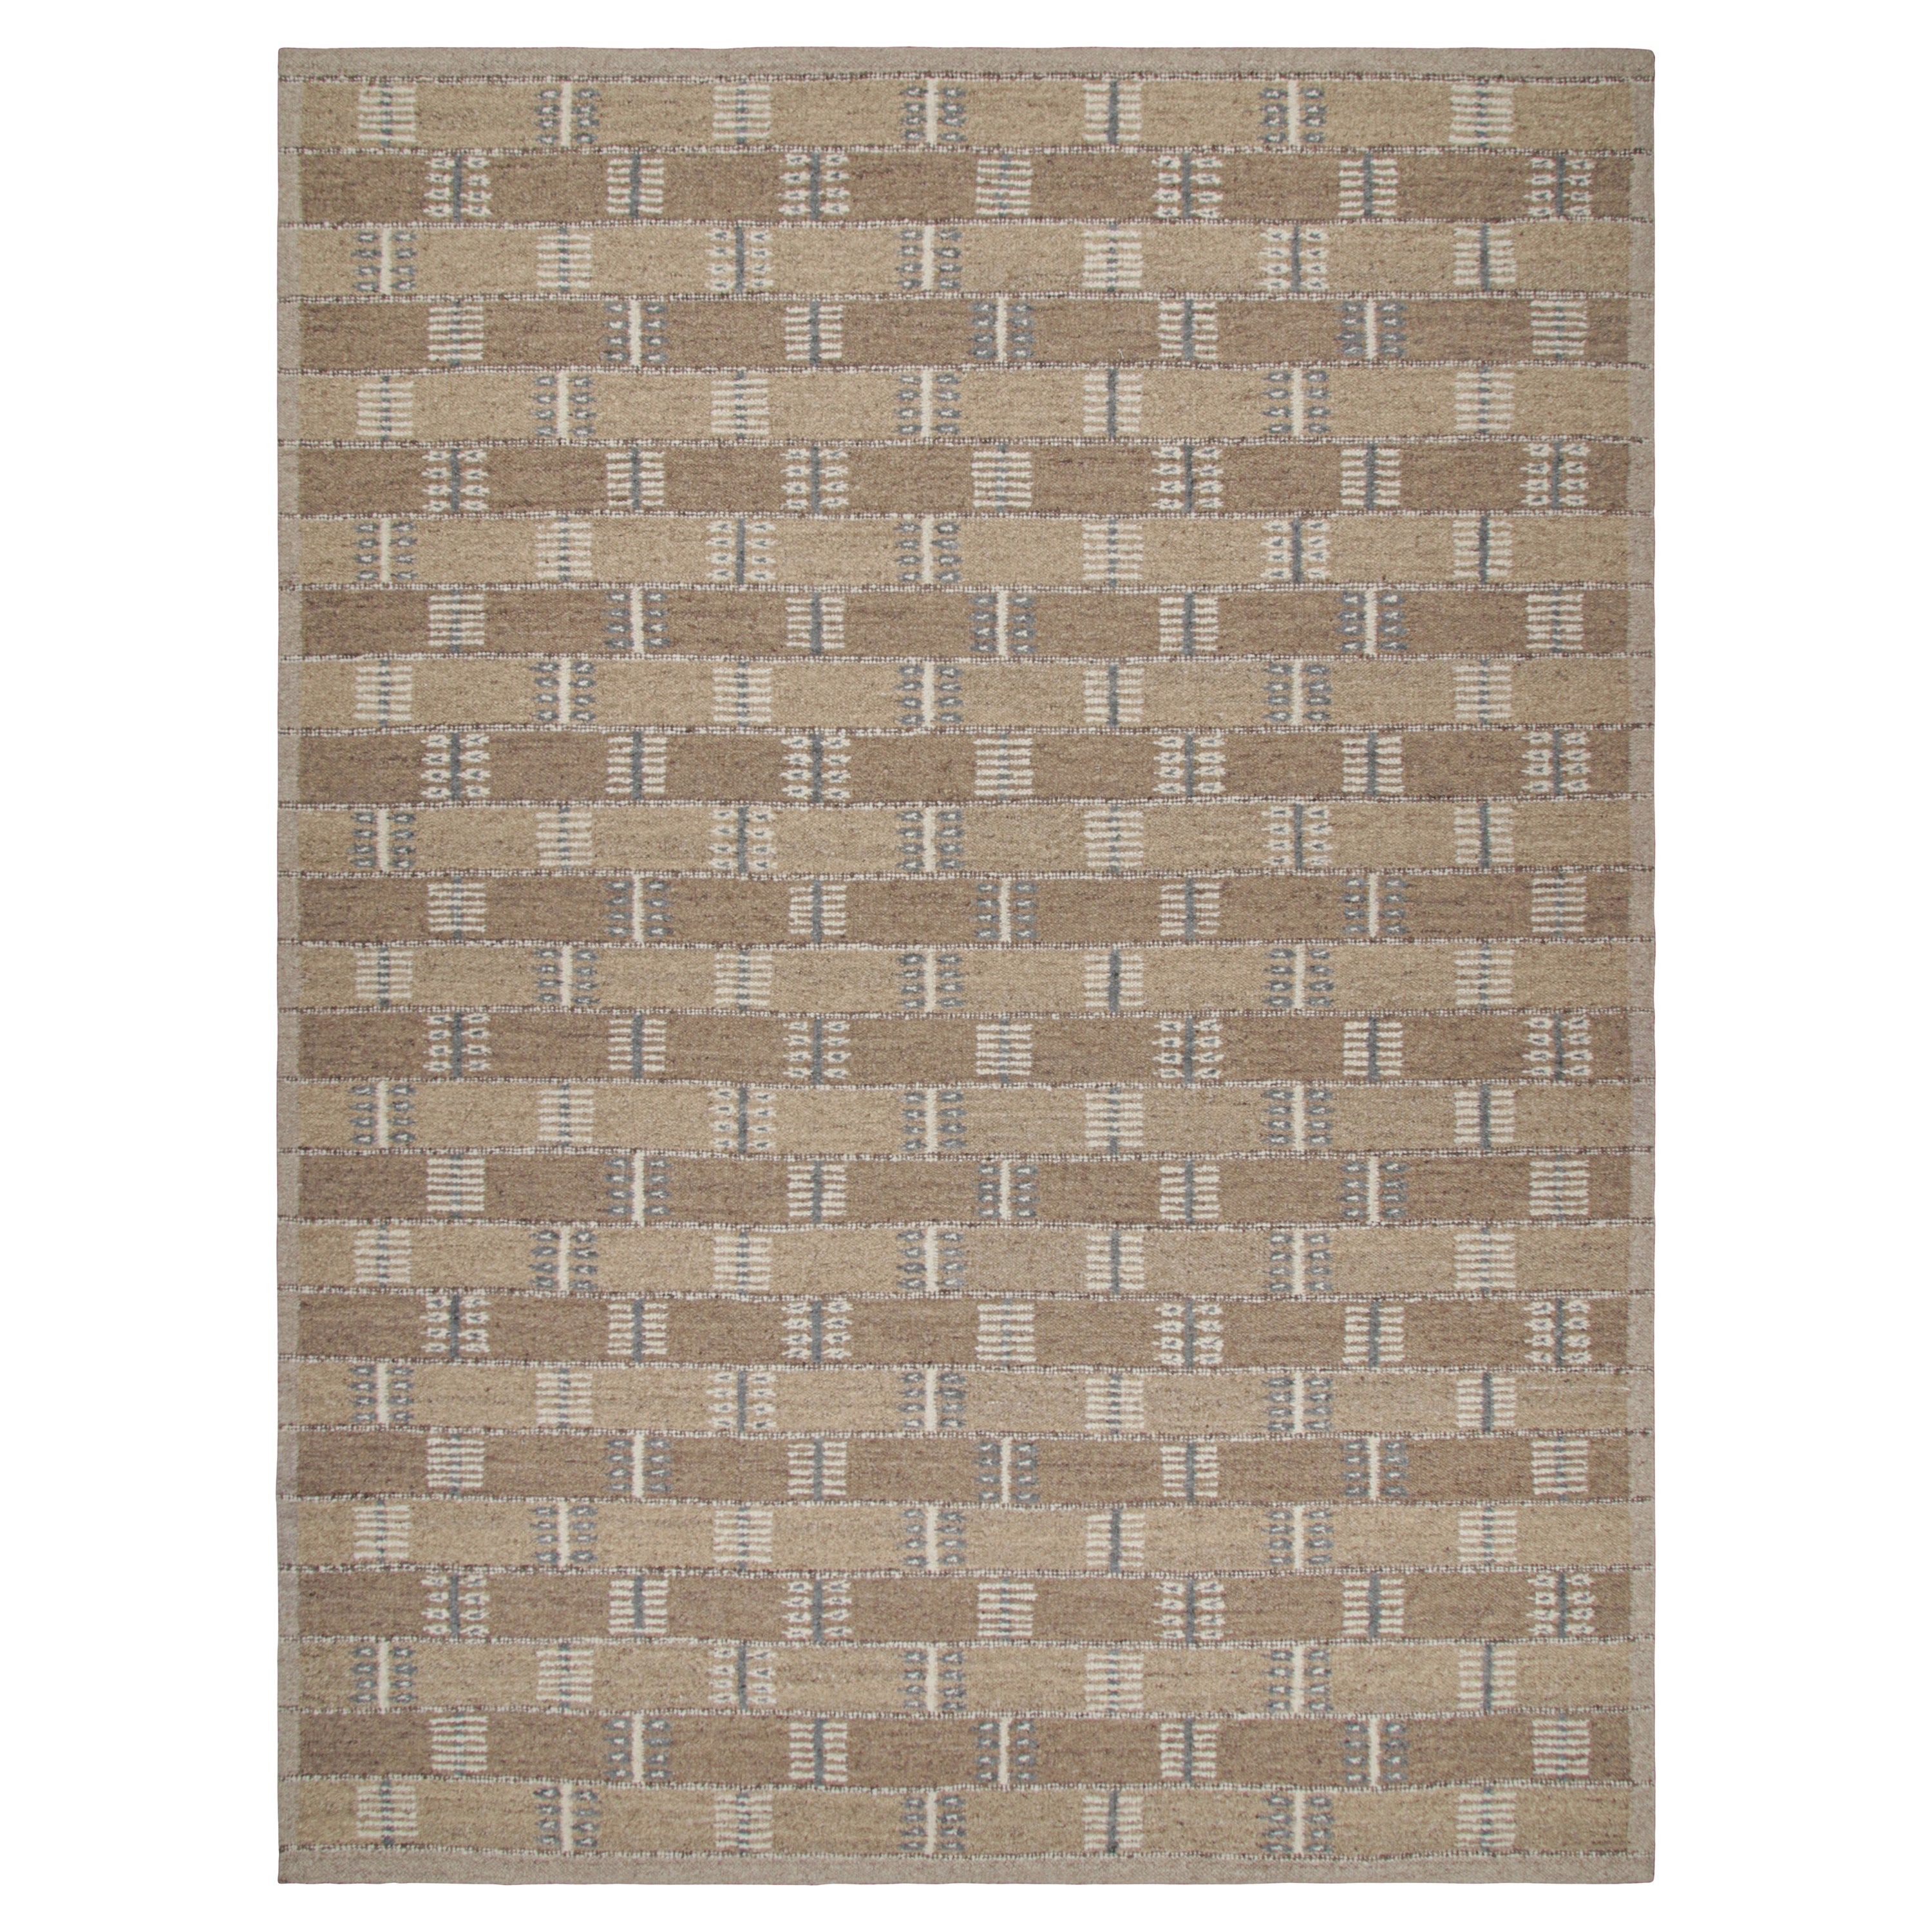 Rug & Kilim's Teppich im skandinavischen Stil mit beige-braunem und grauem geometrischem Muster